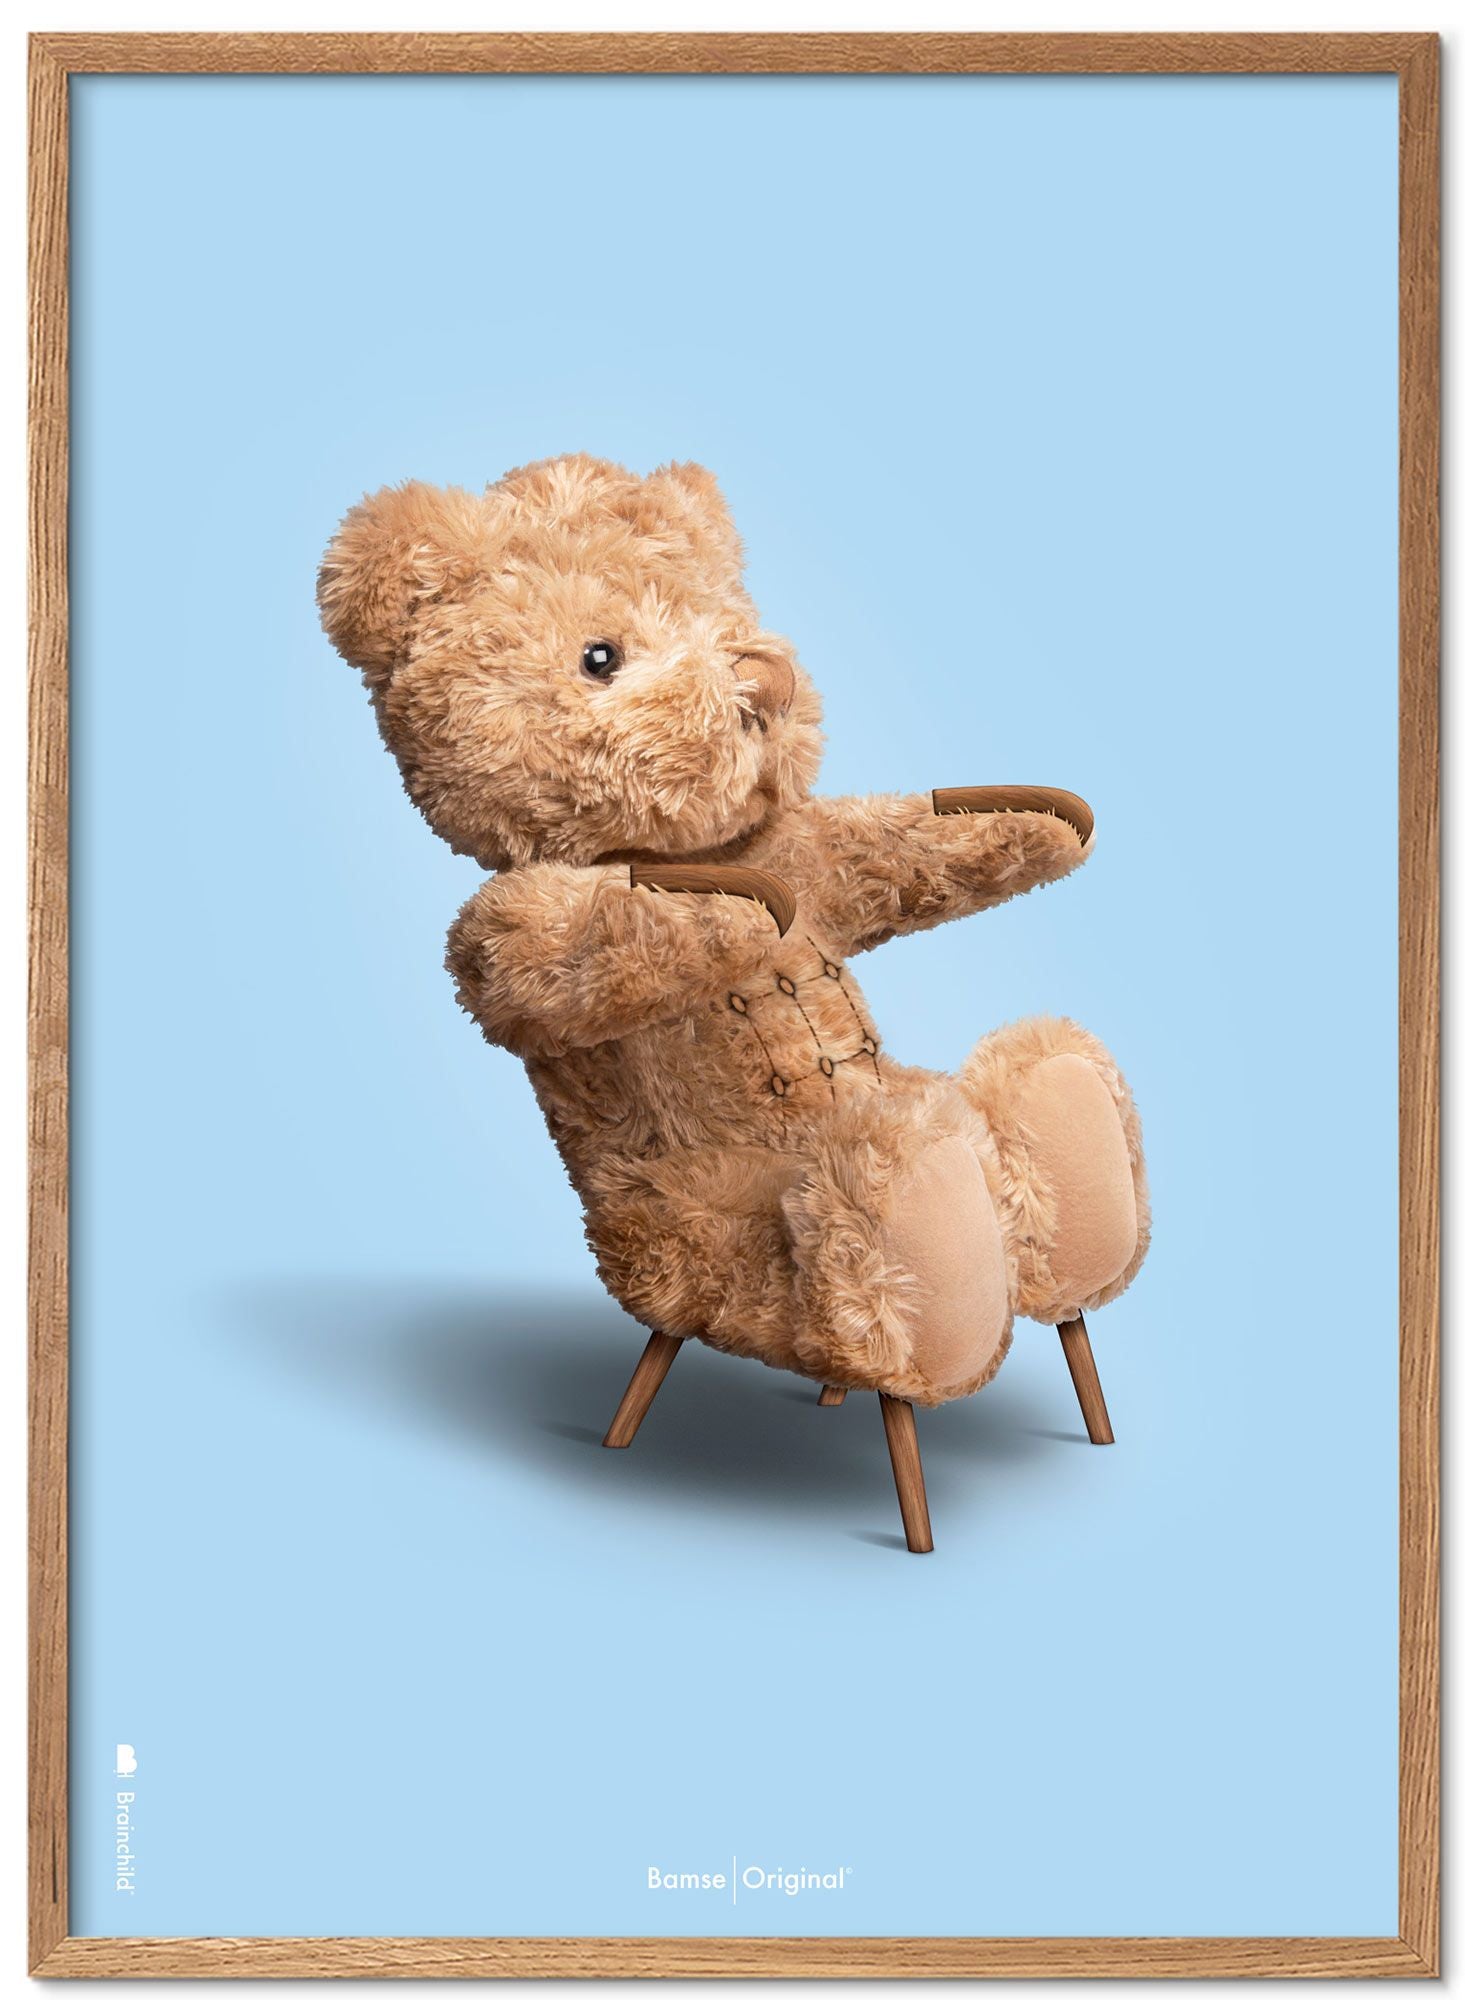 Brainchild Cadre d'affiche classique d'ours en peluche en bois clair Ramme 30x40 cm, fond bleu clair